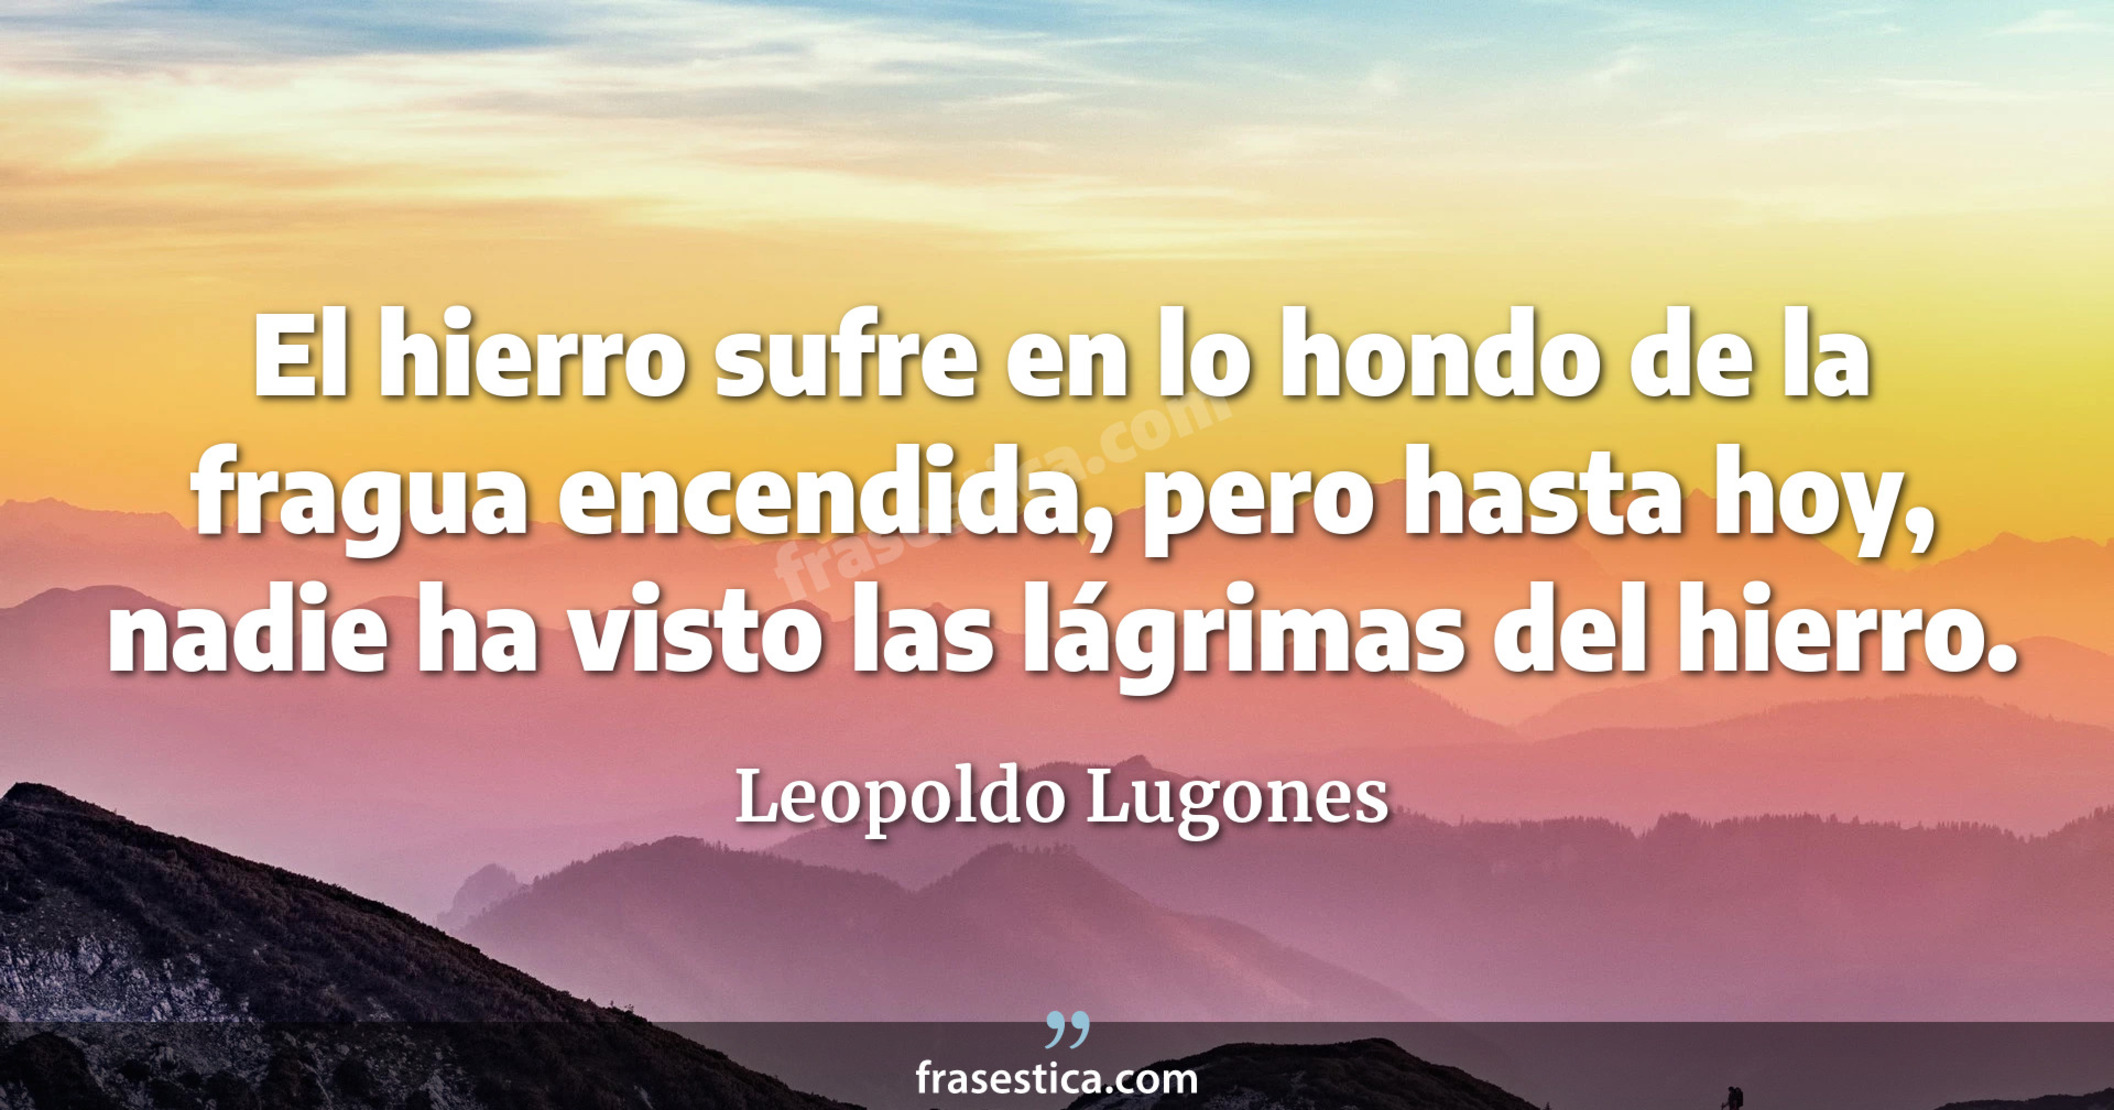 El hierro sufre en lo hondo de la fragua encendida, pero hasta hoy, nadie ha visto las lágrimas del hierro. - Leopoldo Lugones